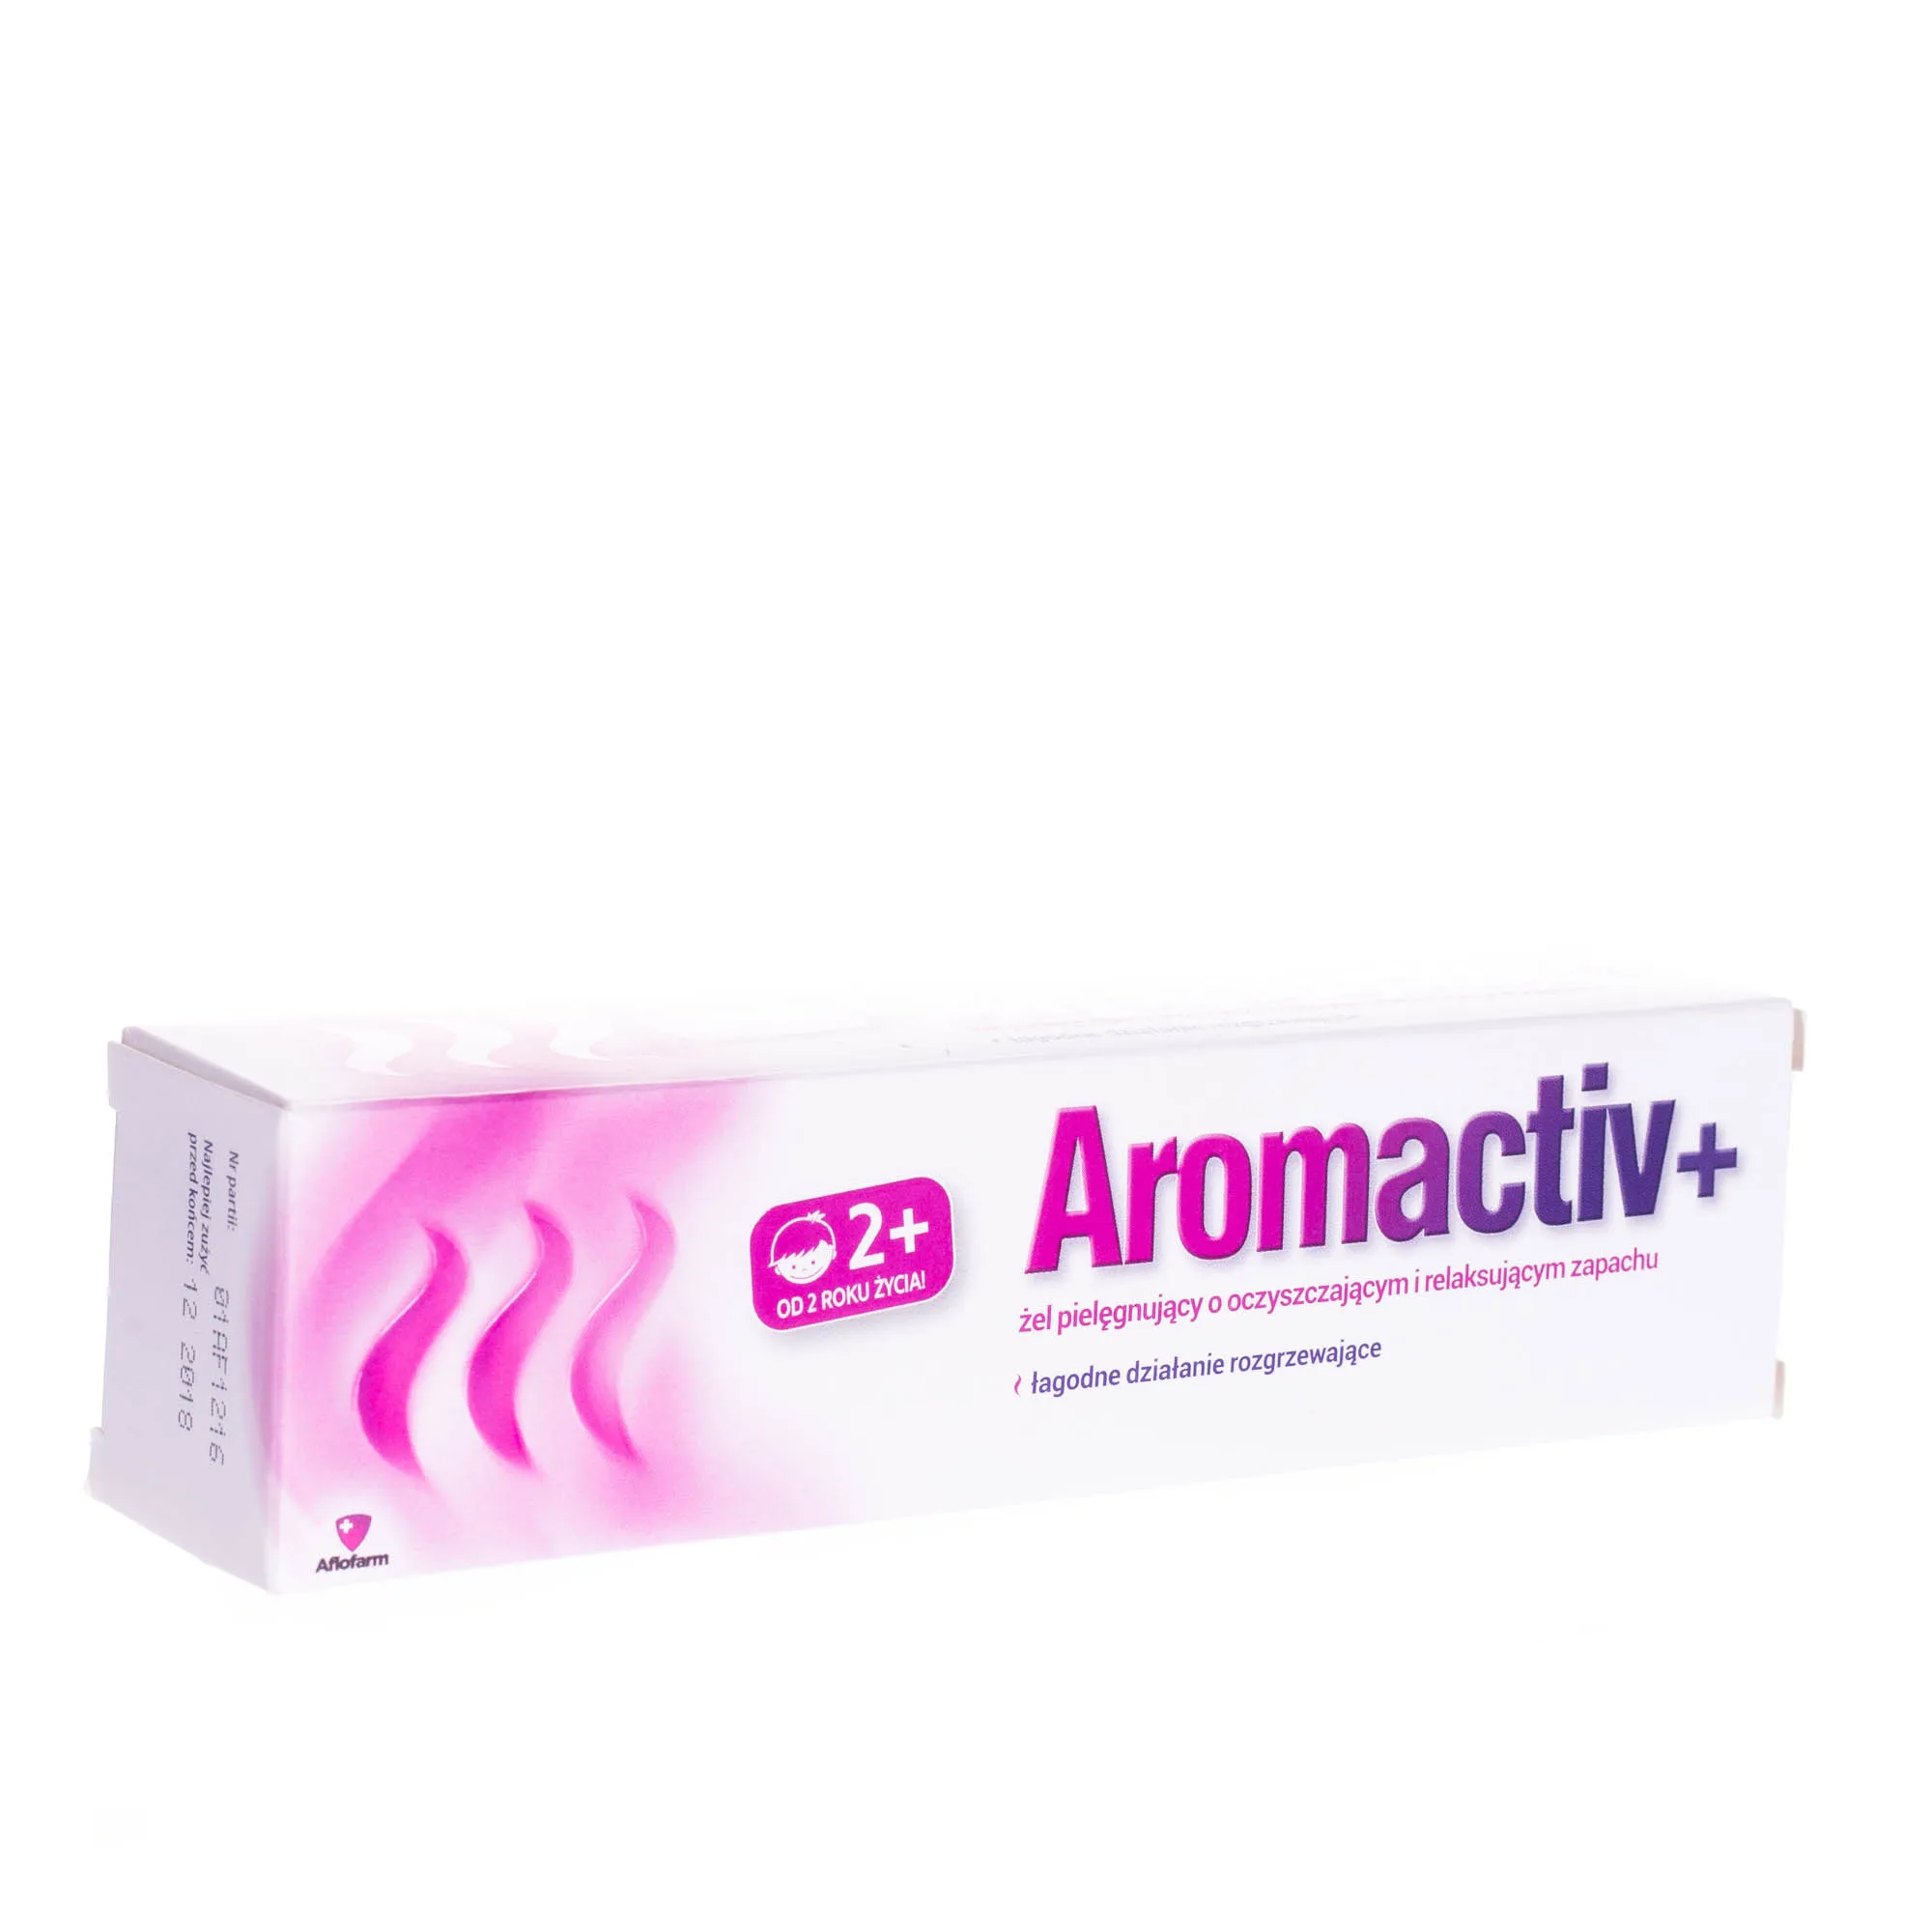 Aromactiv+, żel pielęgnujący o oczyszczającym i relaksującym zapachu, 50 g 